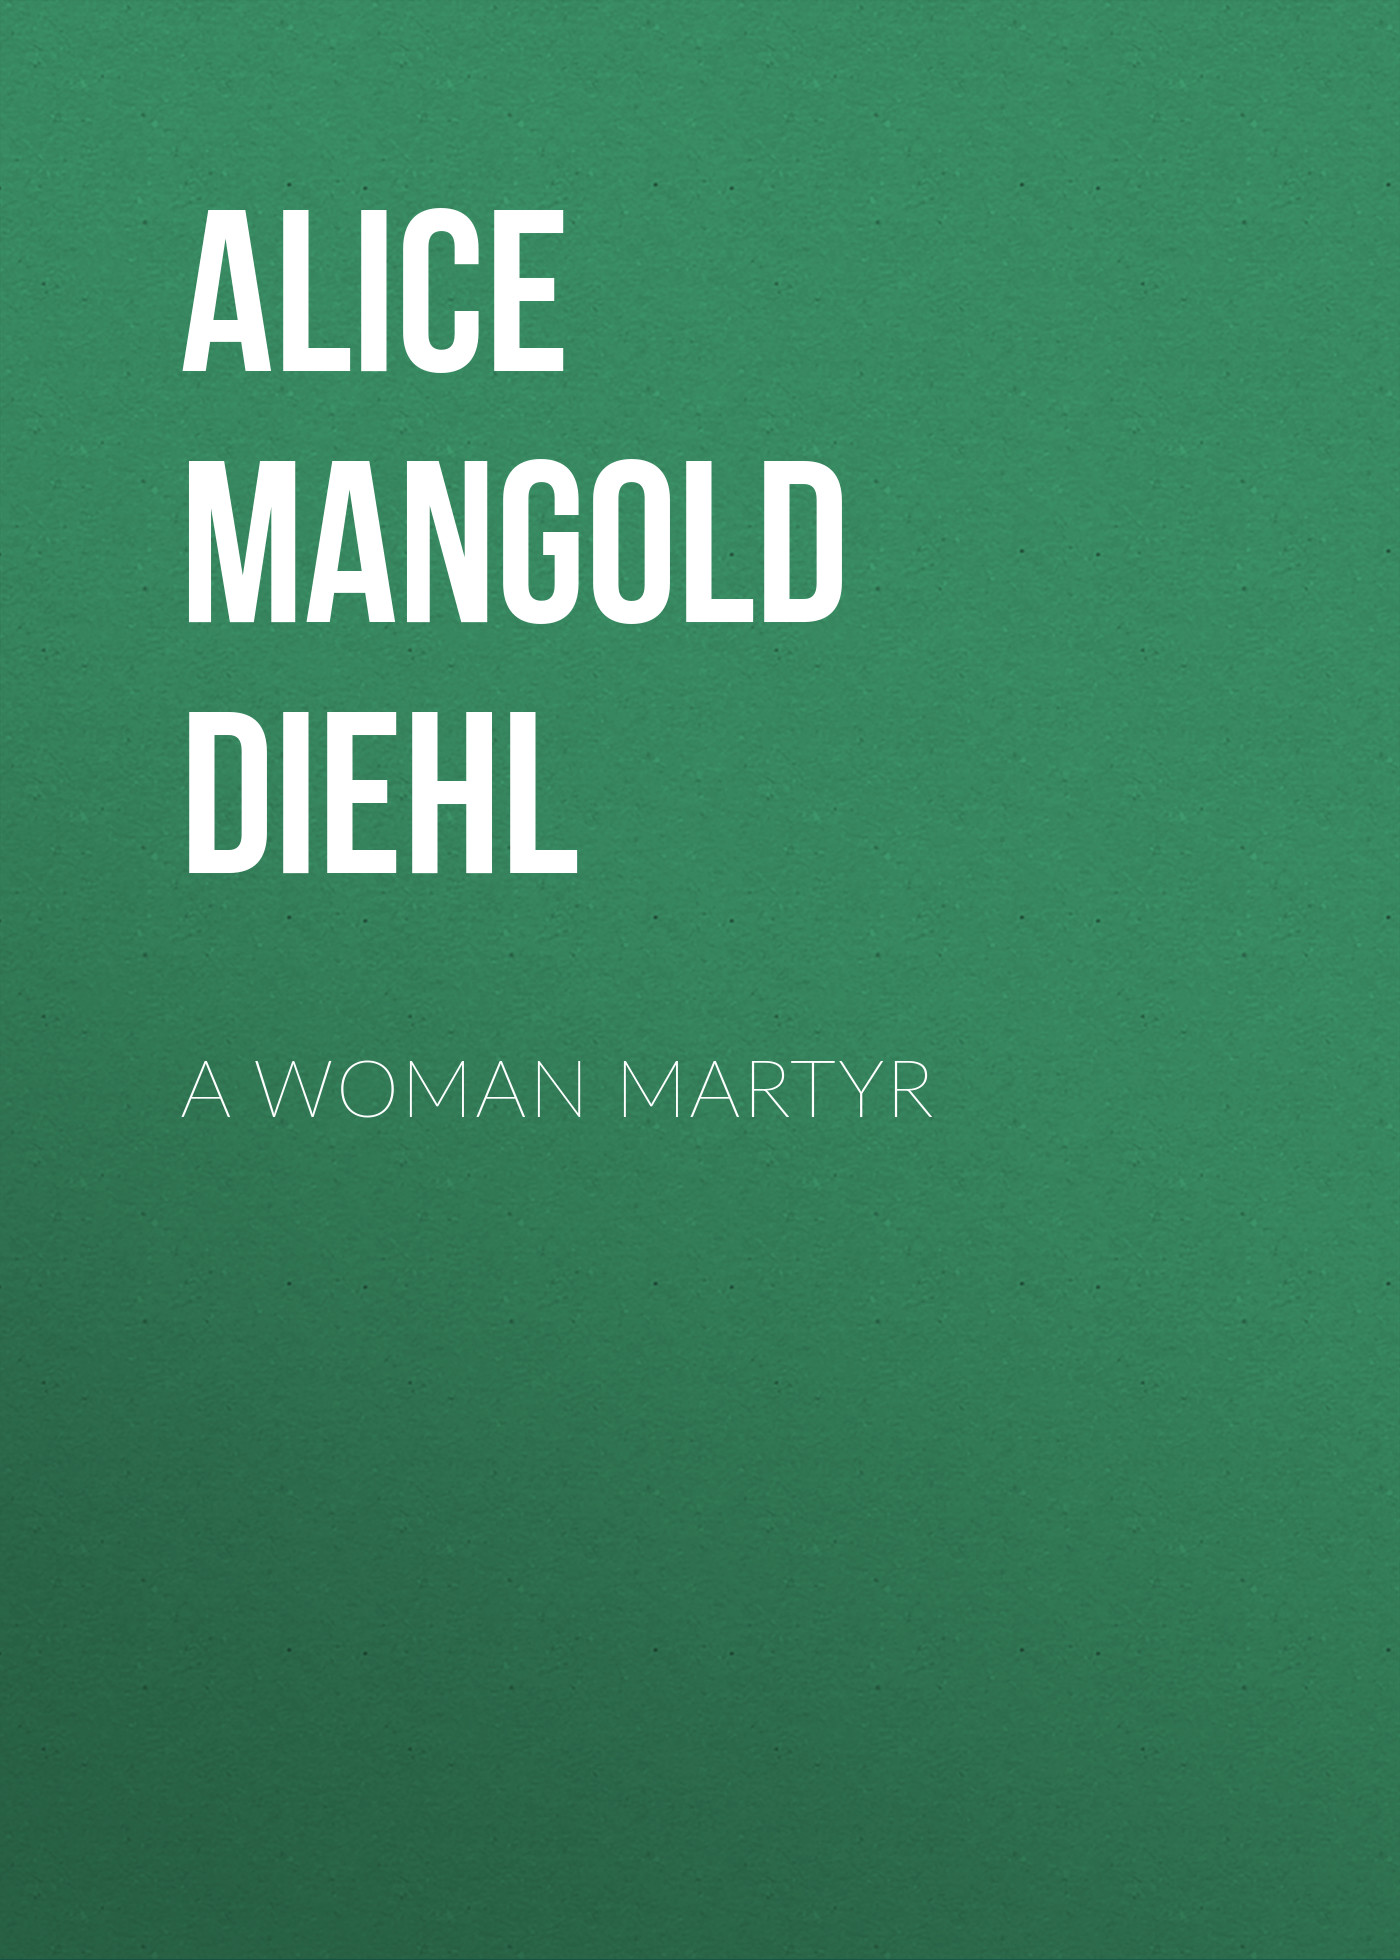 Книга A Woman Martyr из серии , созданная Alice Diehl, может относится к жанру Зарубежная старинная литература, Зарубежная классика. Стоимость электронной книги A Woman Martyr с идентификатором 24548308 составляет 0 руб.